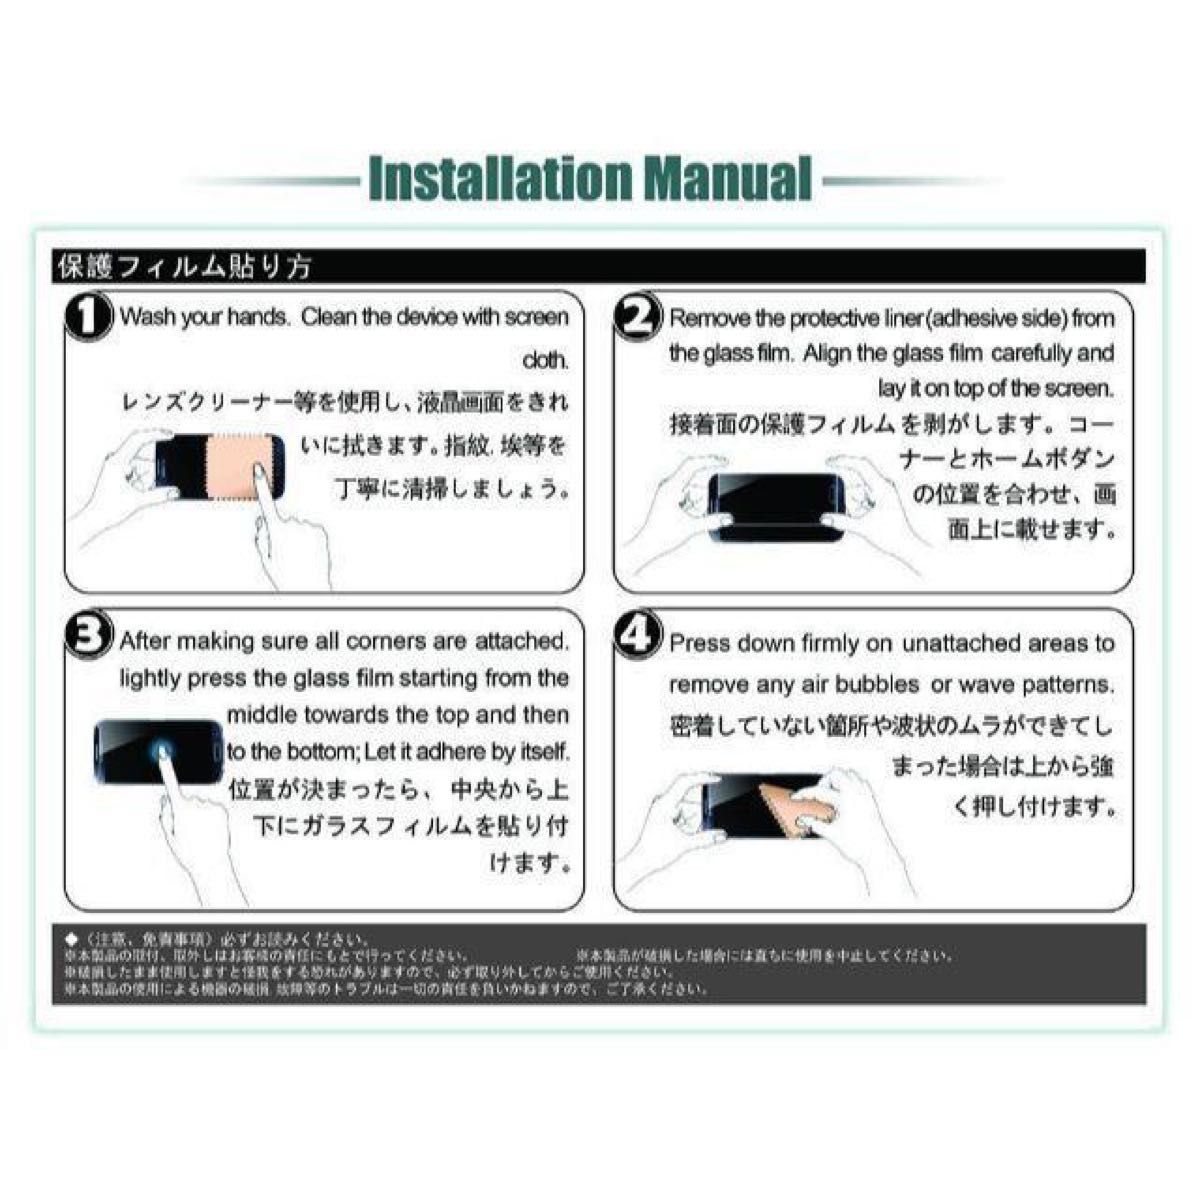 【DD8D】Huawei MediaPad T3 7.0専用 液晶保護フィルム